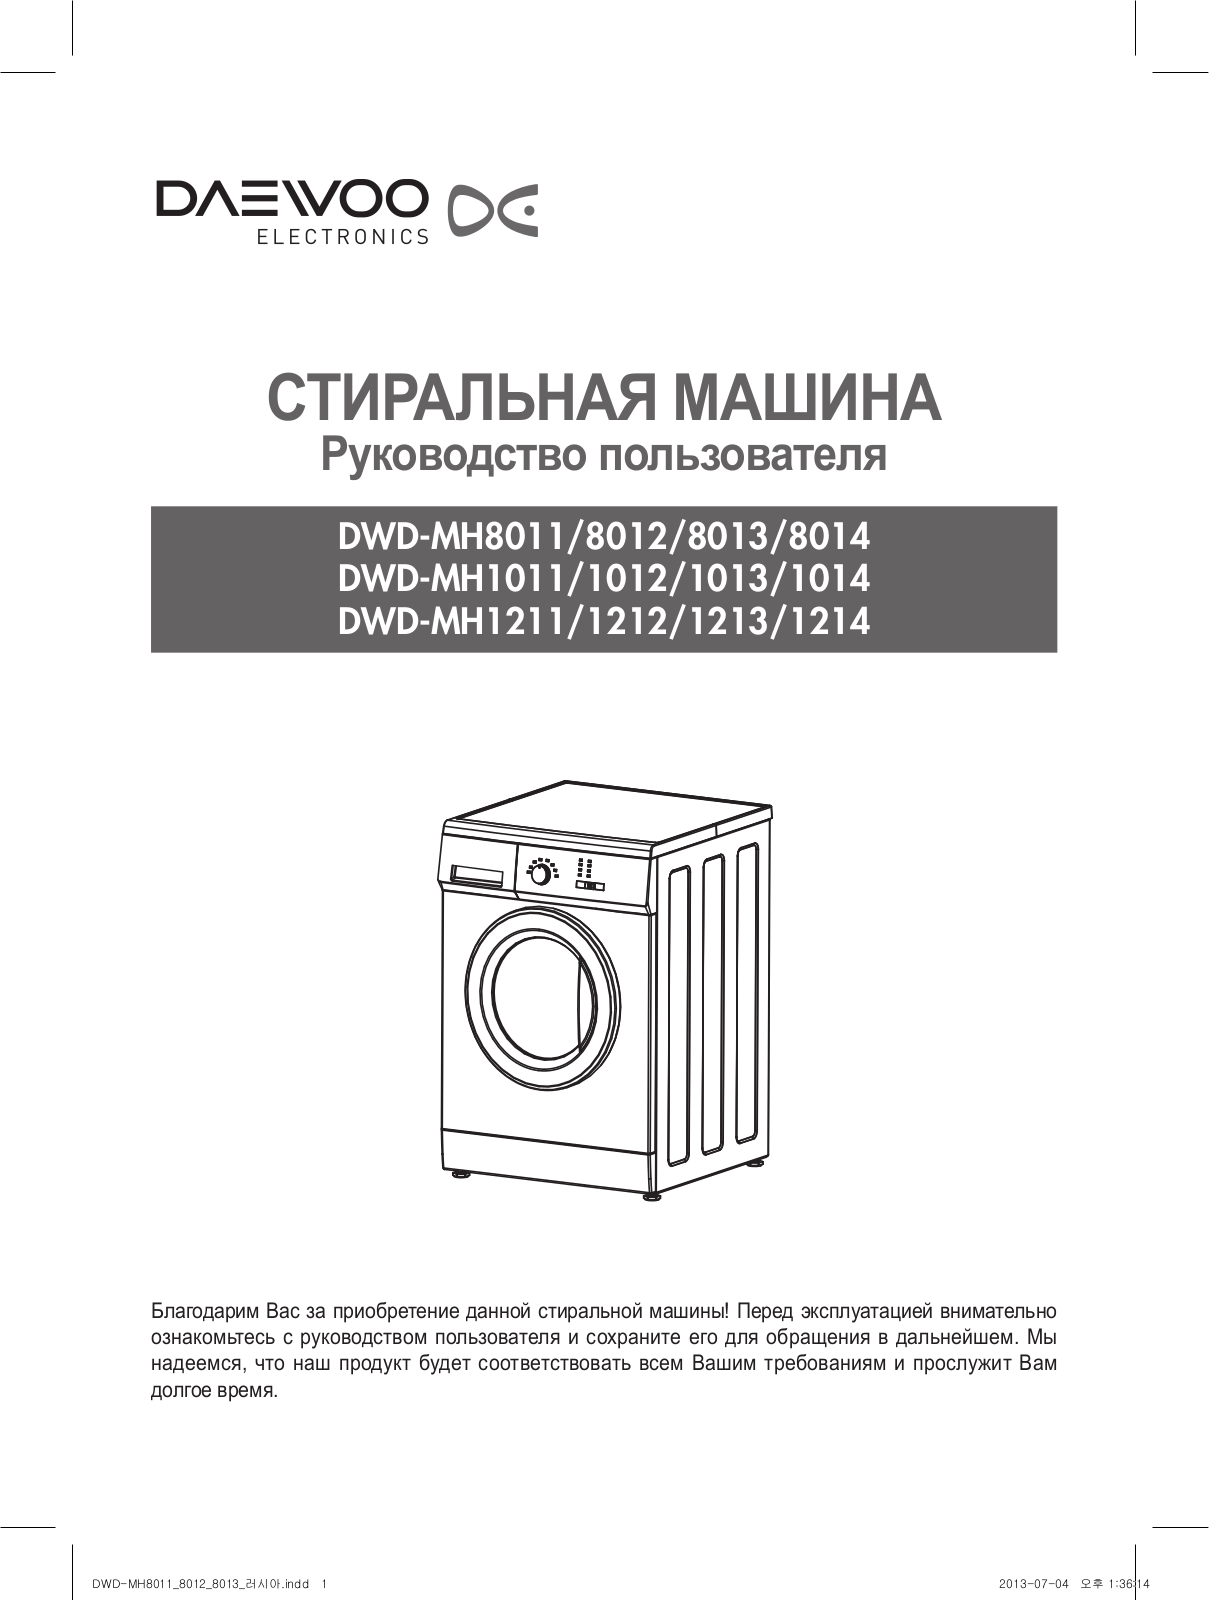 Daewoo DWD-MH1211 User Manual